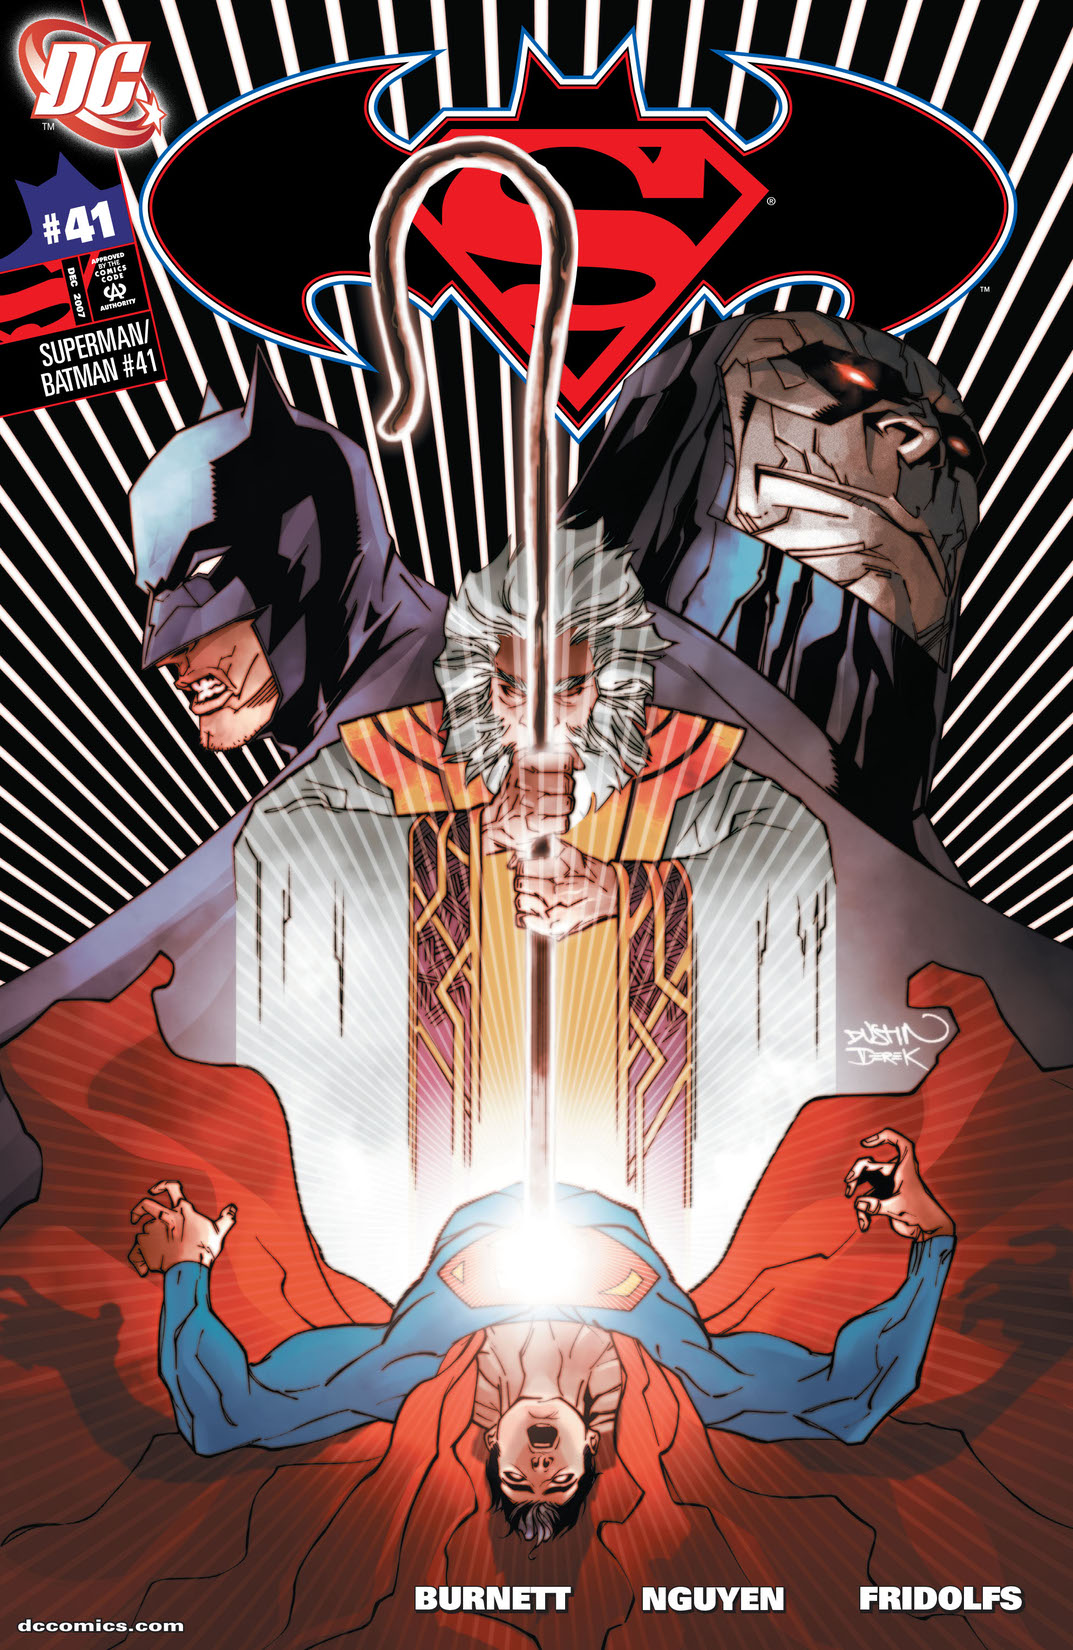 Superman/Batman #41 preview images